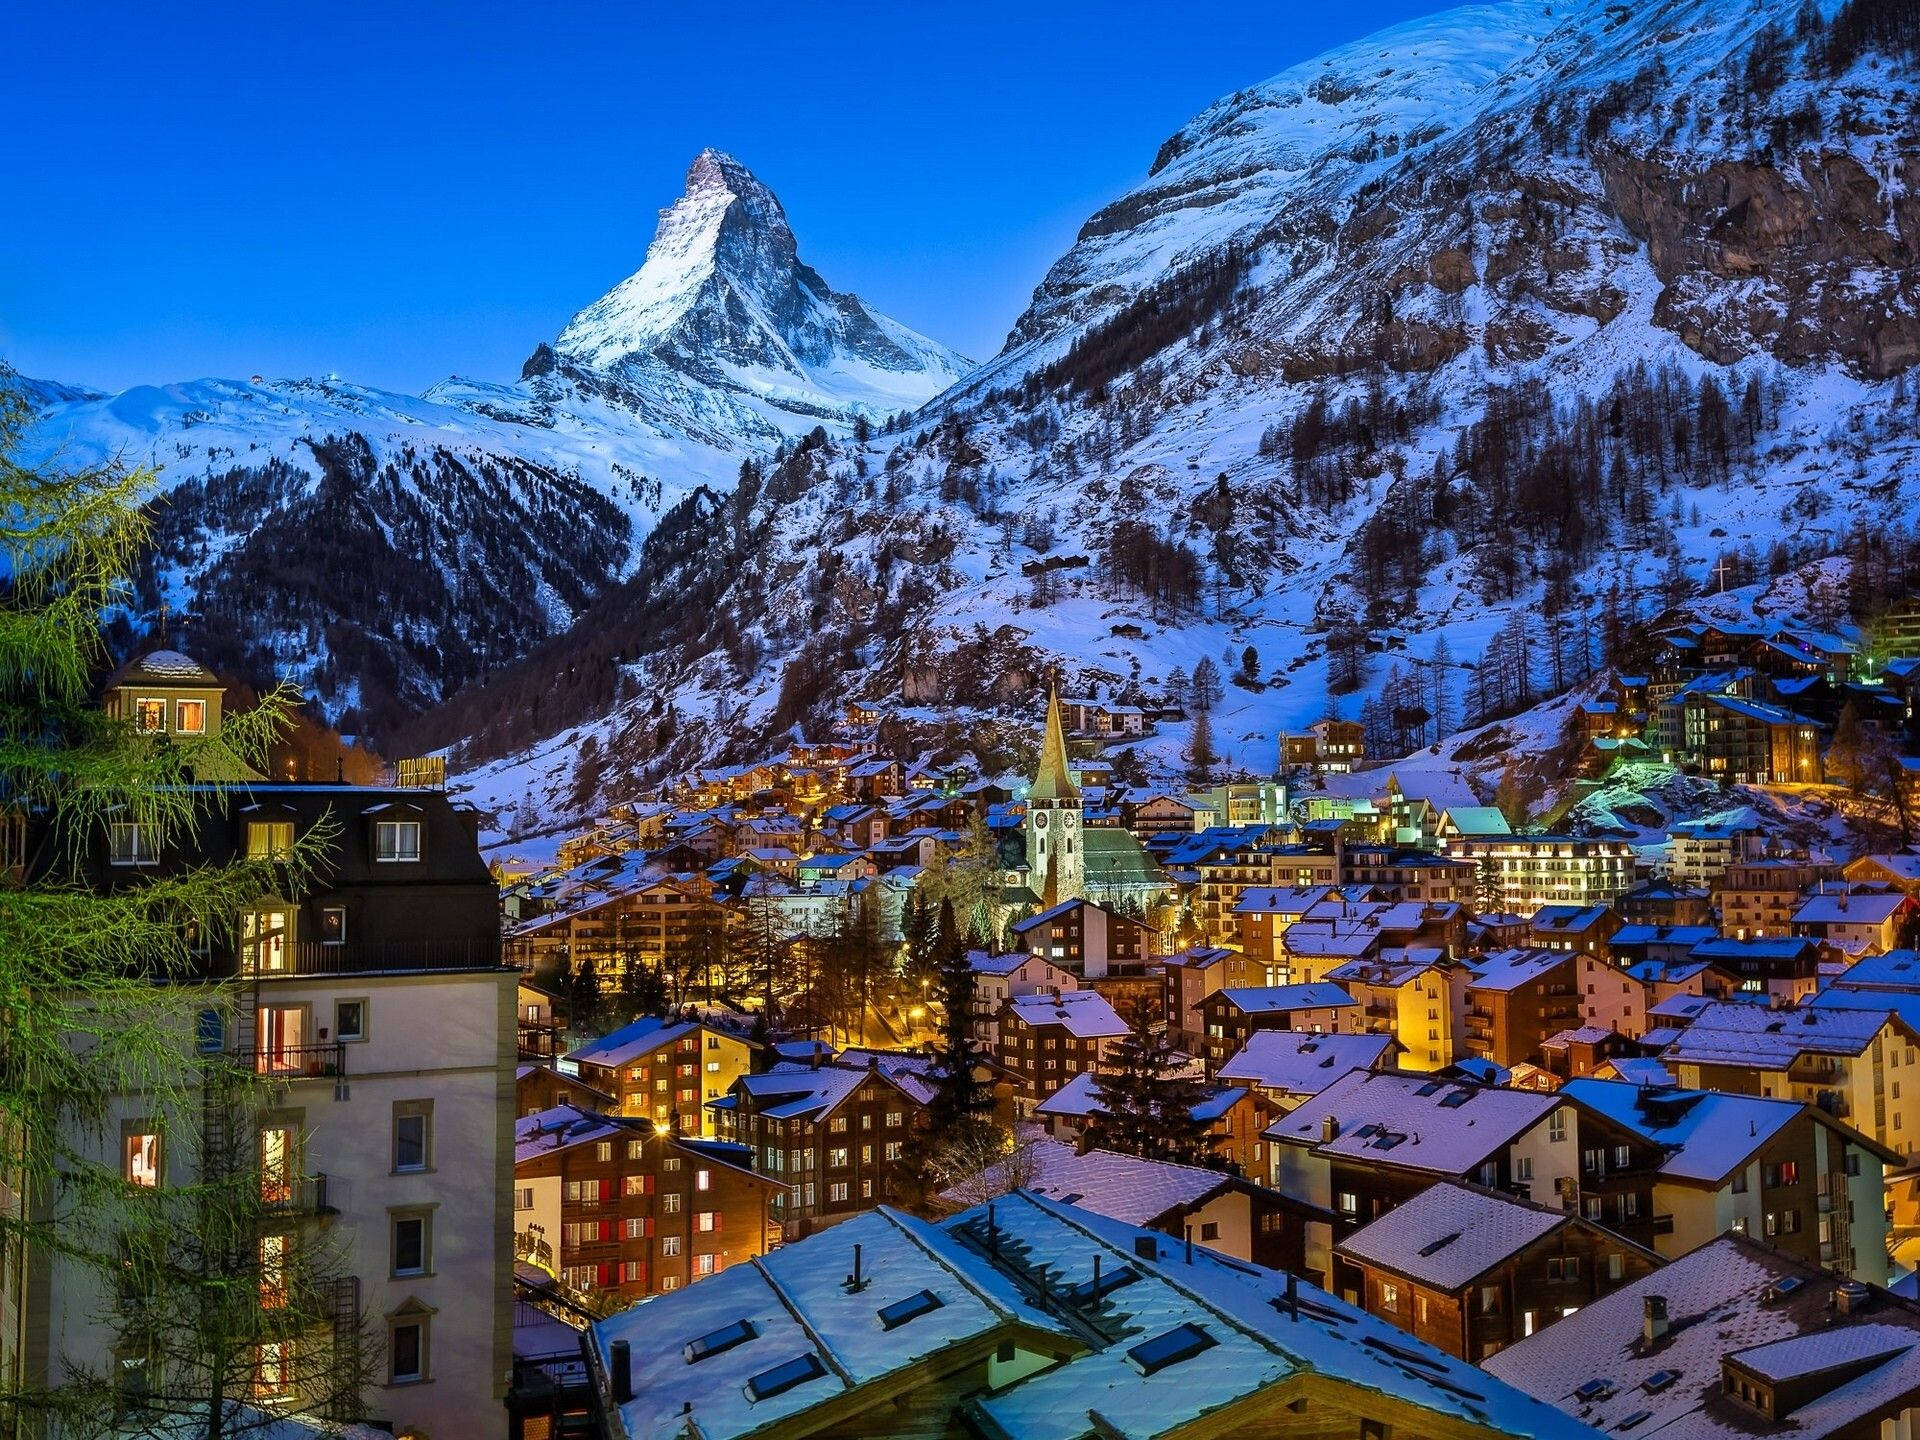 Swiss Alps Winter Landscape Wallpaper